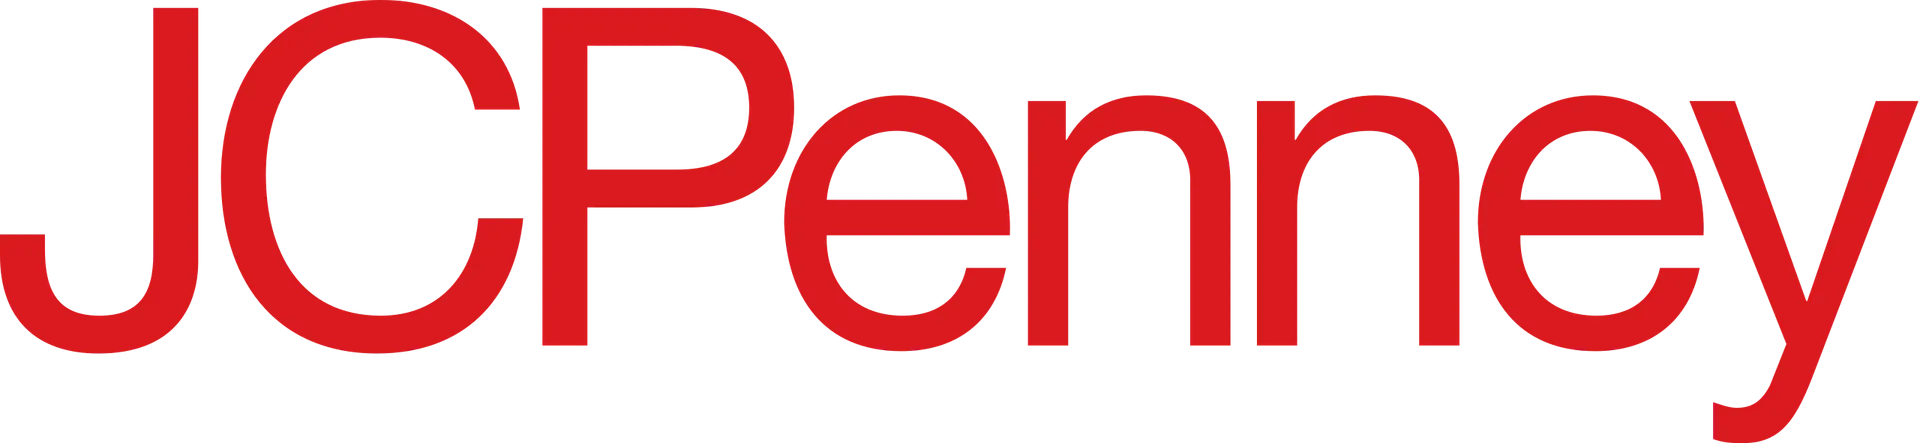 JCPENNEY logo de catálogo